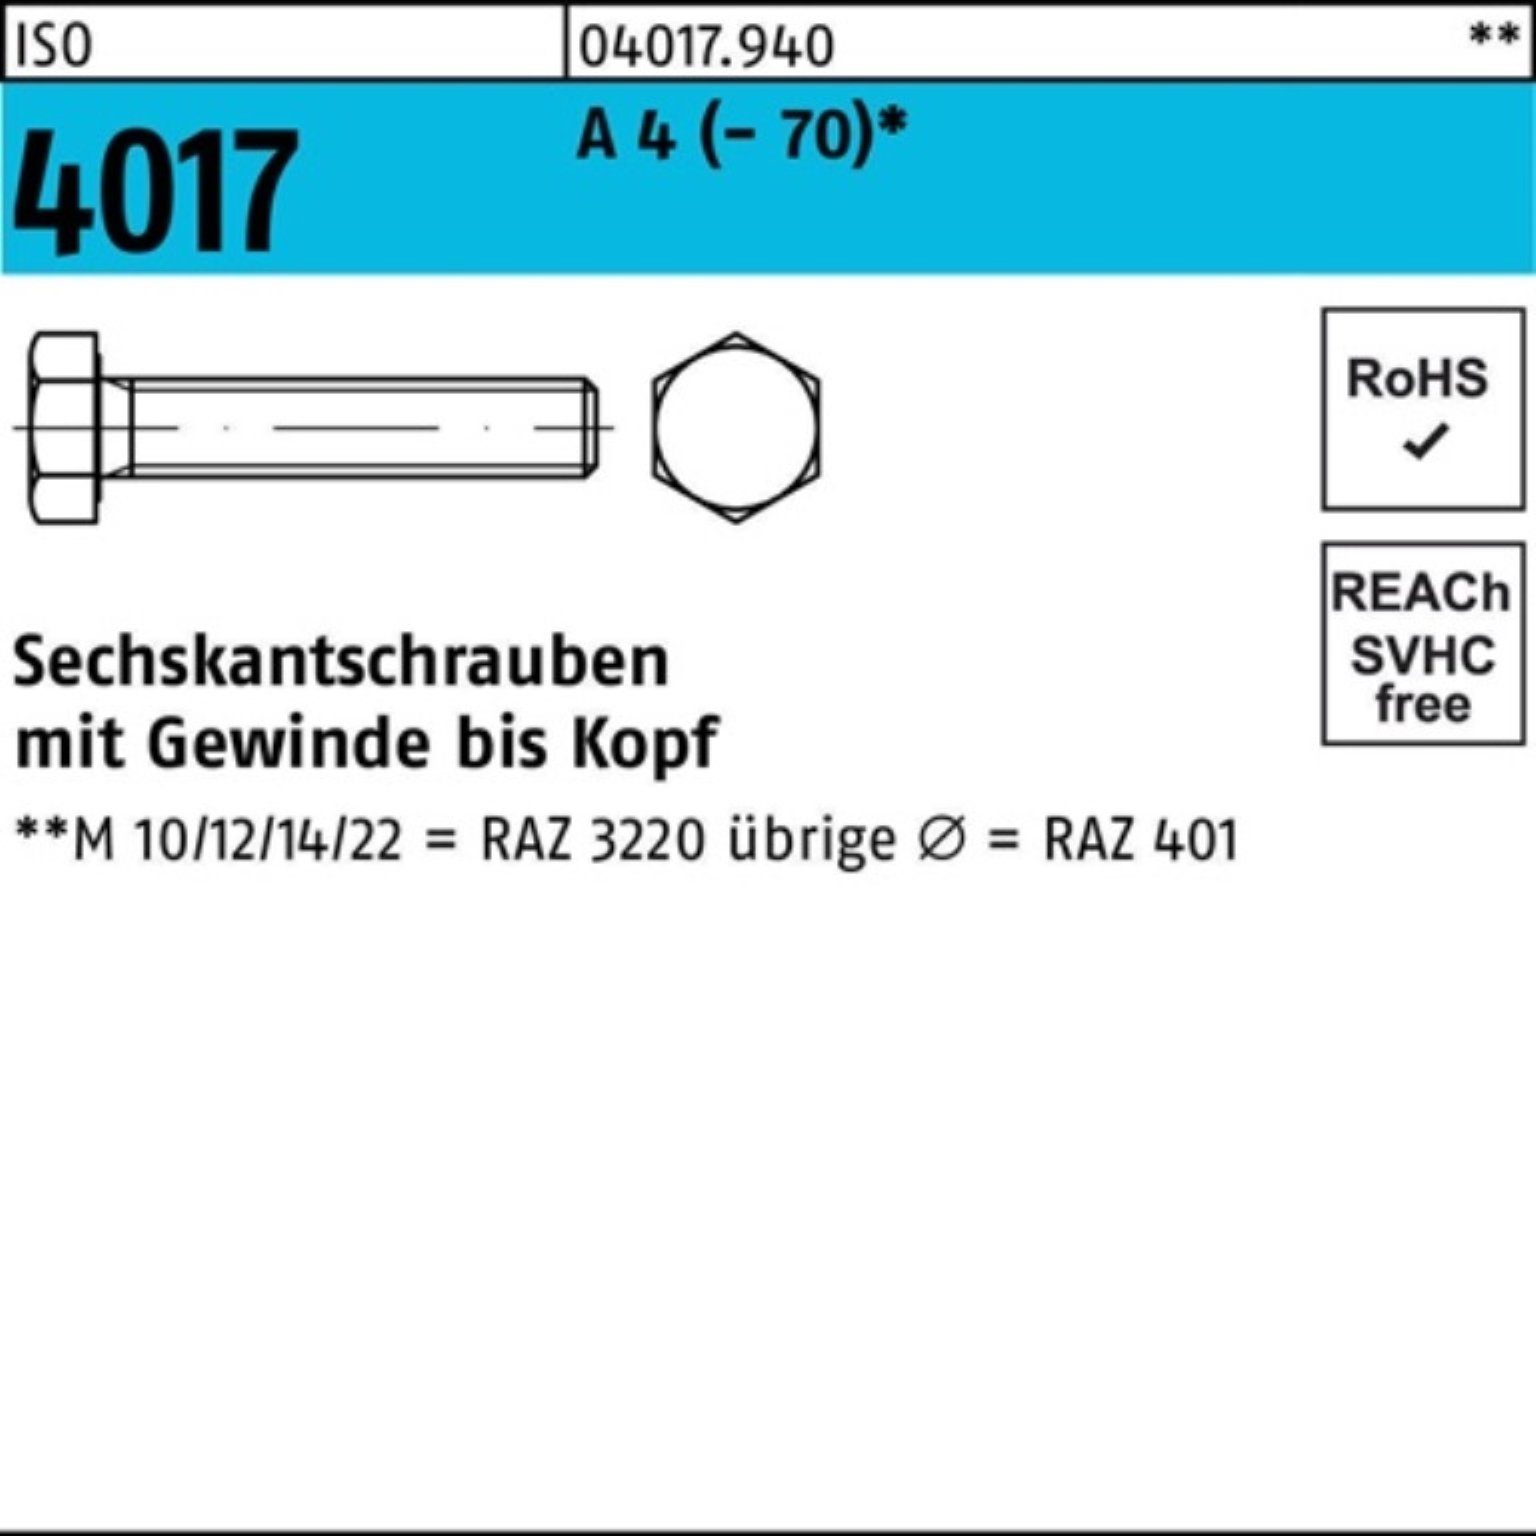 I Pack 65 1 4 Bufab 100er Stück Sechskantschraube A M22x Sechskantschraube VG (70) 4017 ISO